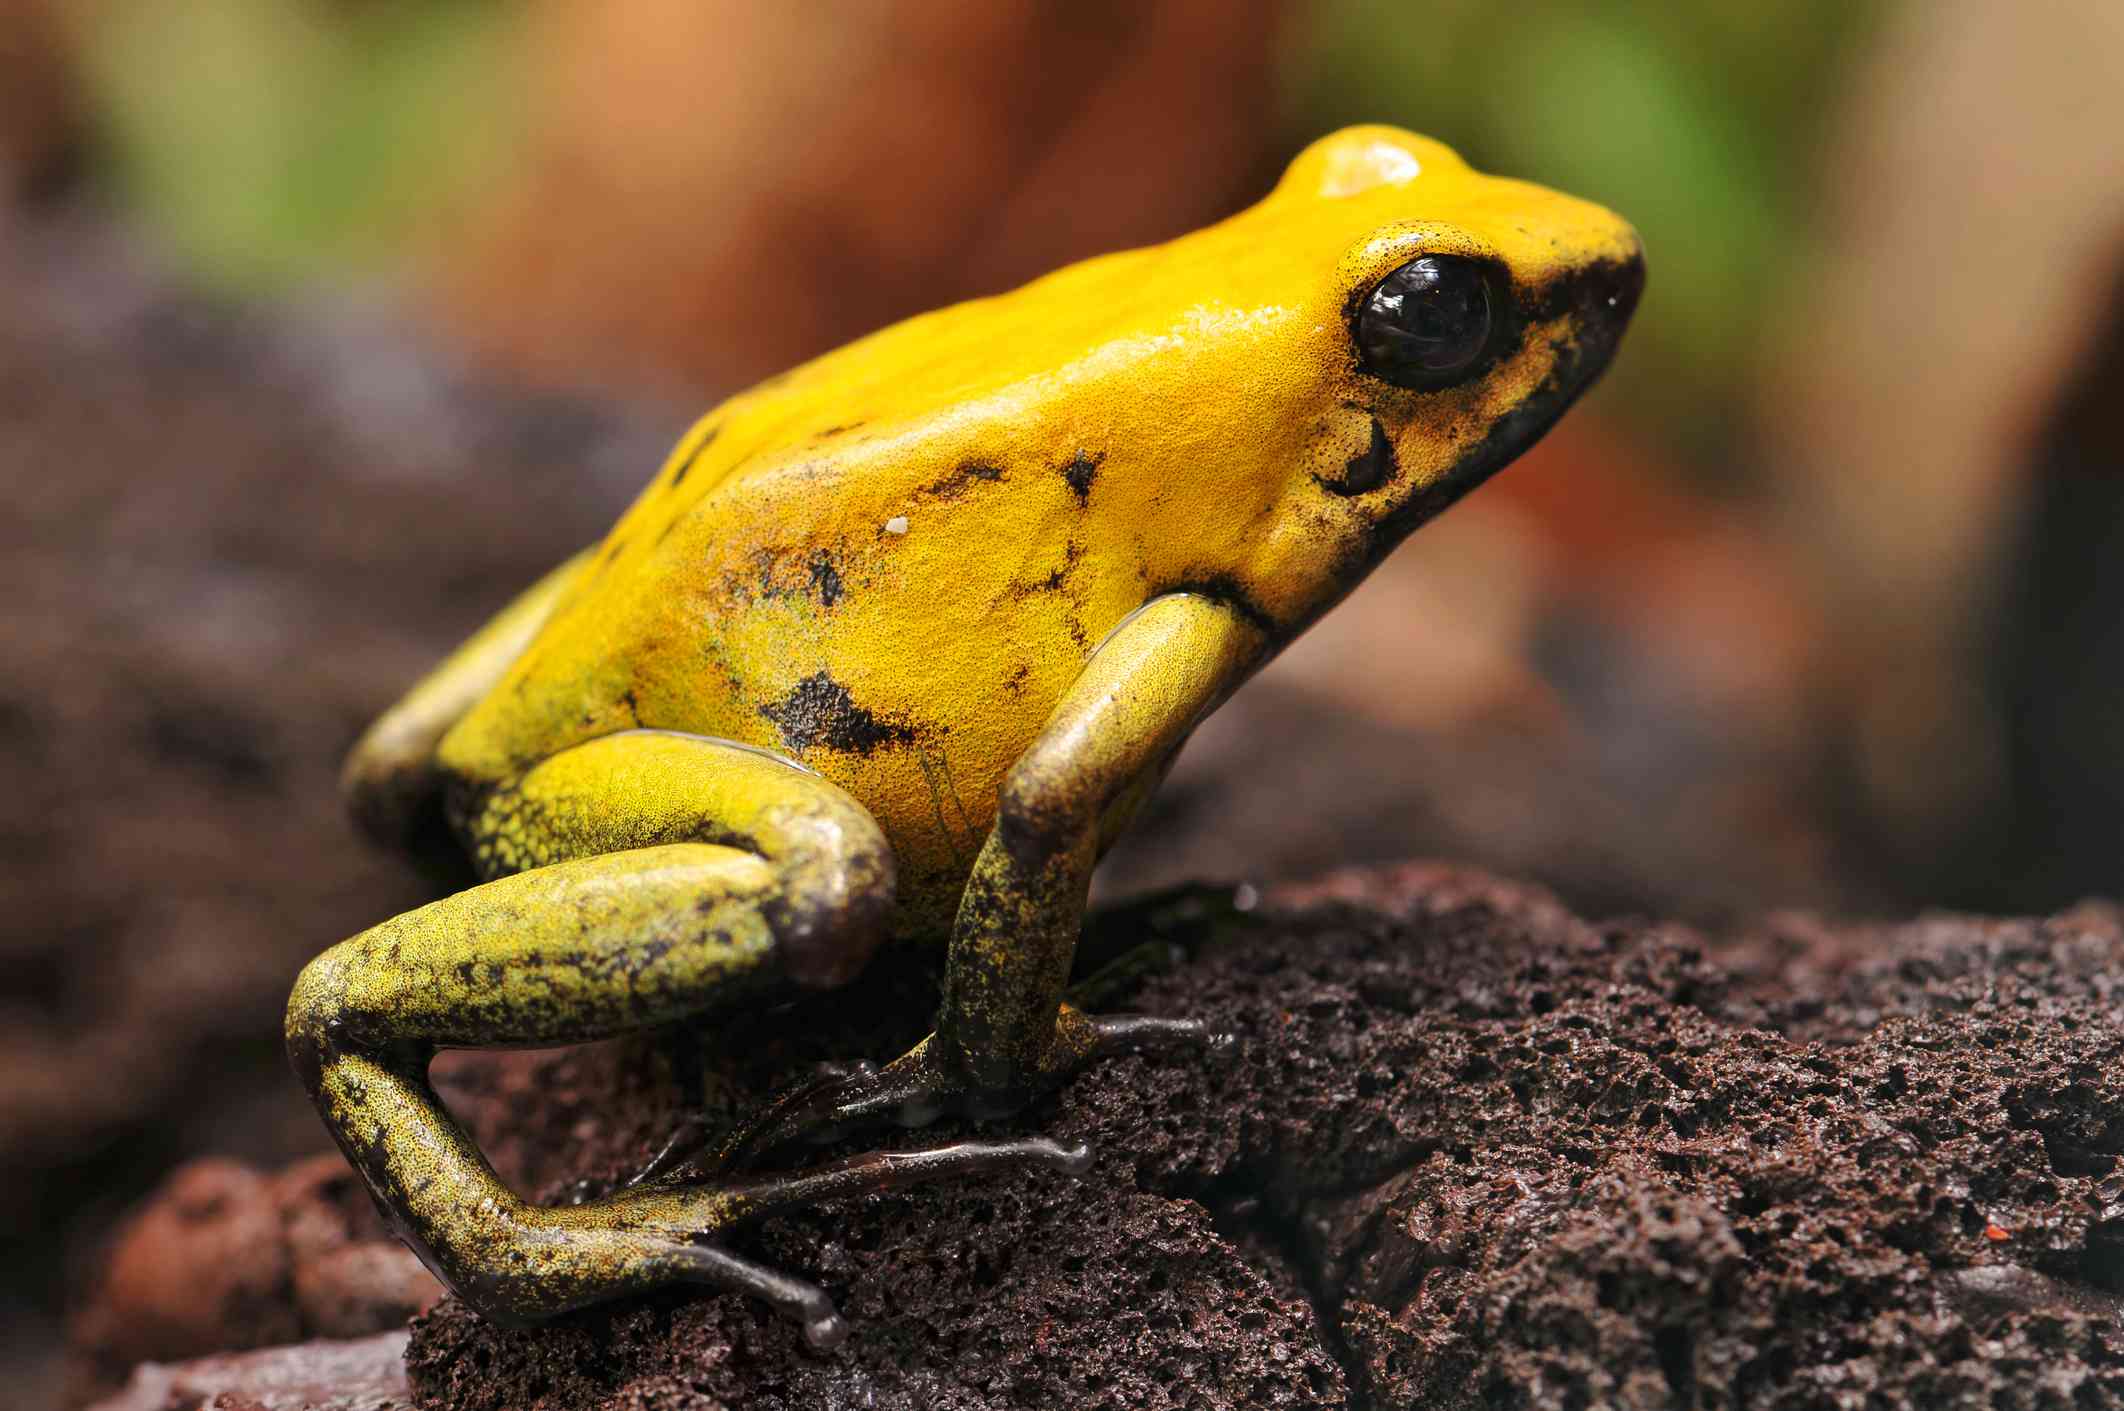 亮黄色的金镖蛙坐在土堆在跳位置。”width=